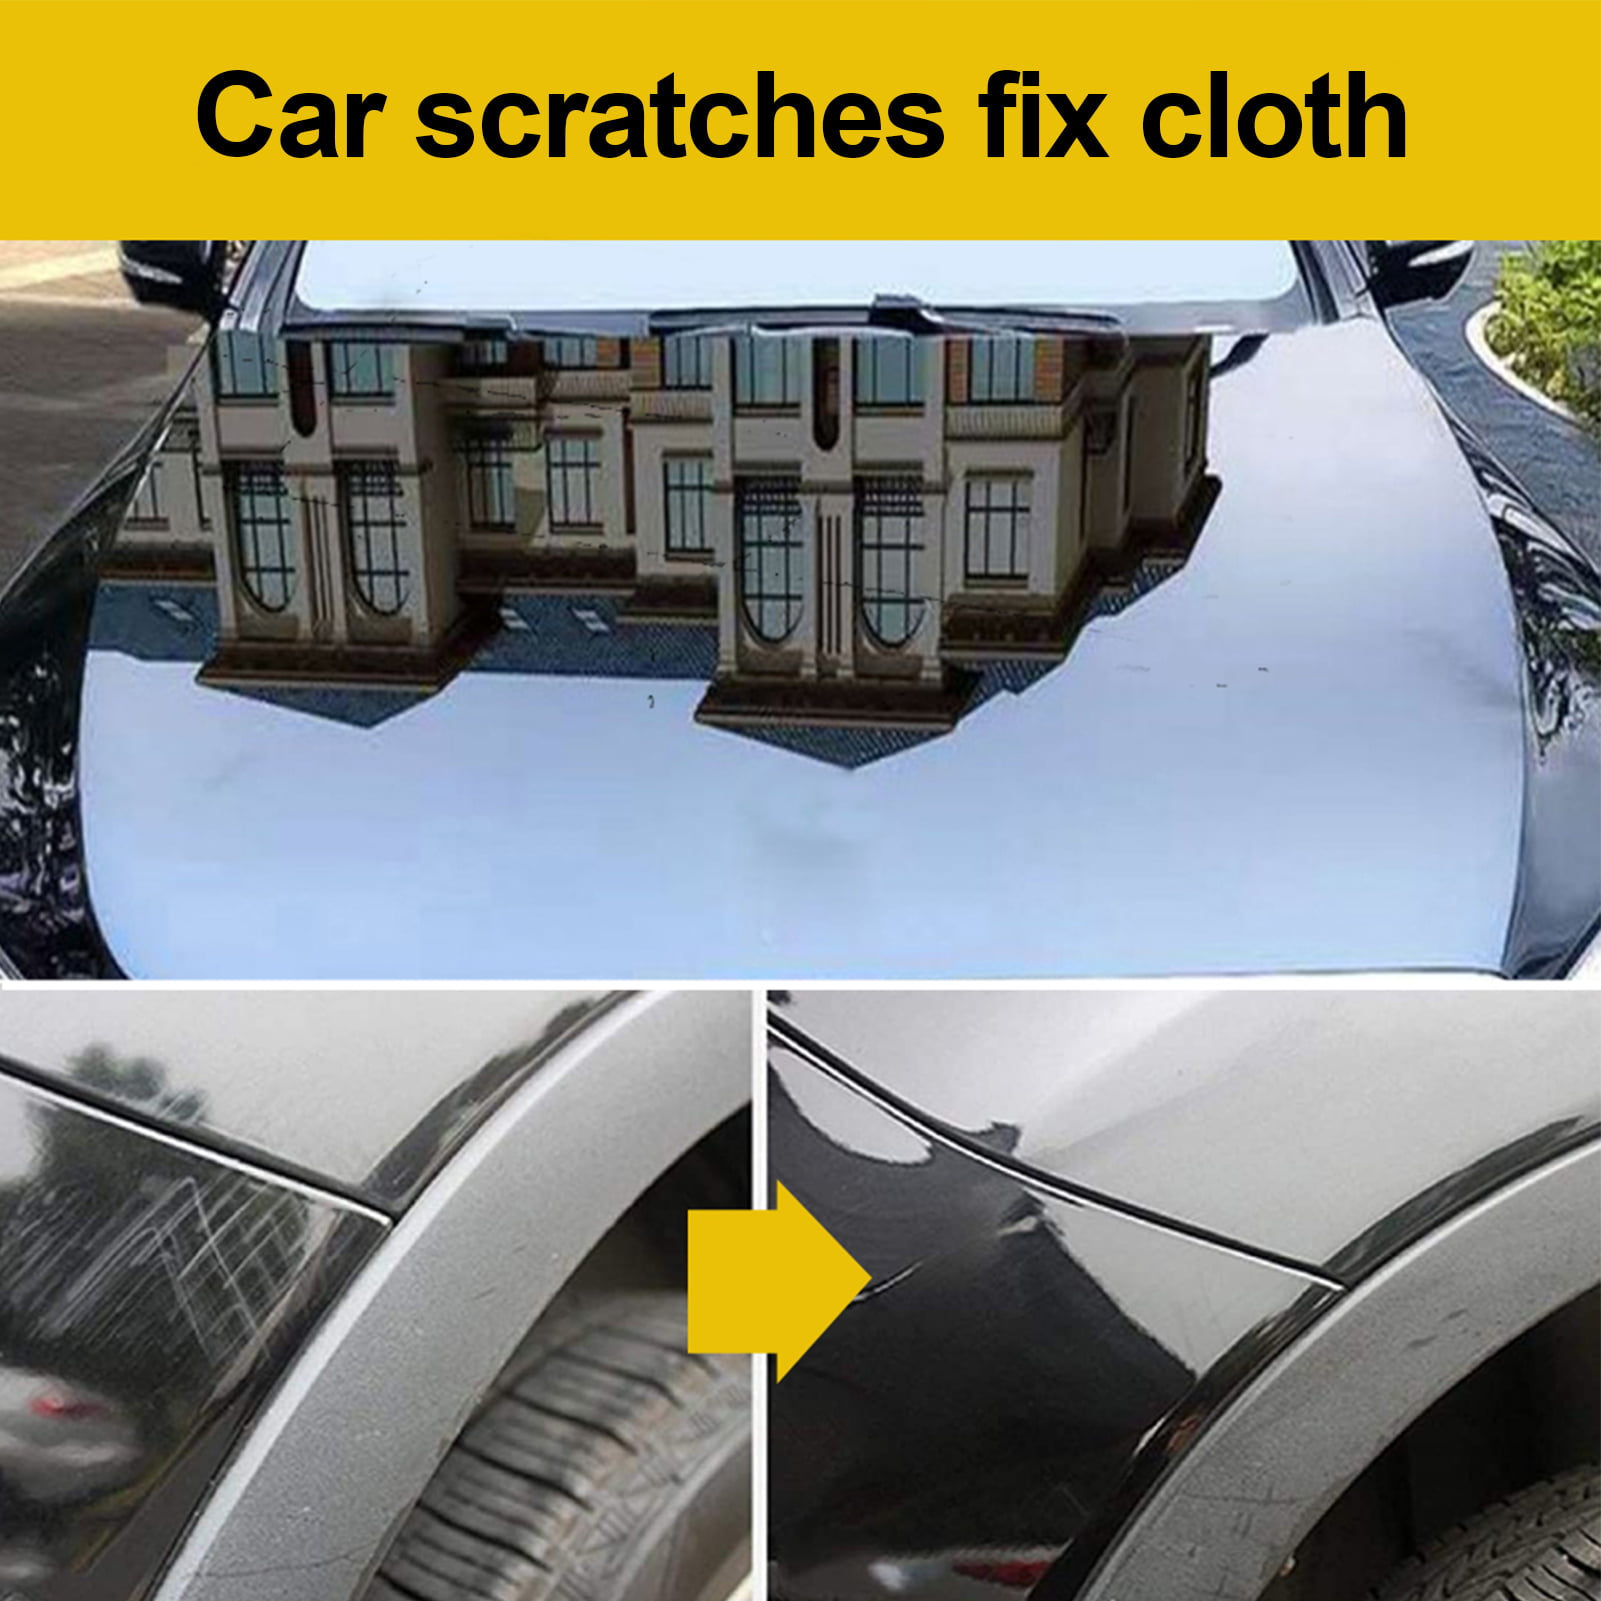 GMMGLT Nano Sparkle Cloth Car Scratches,Car Cloth Nano Sparkle,Scratch Cloth for Car,Nano Cloth for Car Paint Scratch Repair,Easy to Repair Light Scratch Car